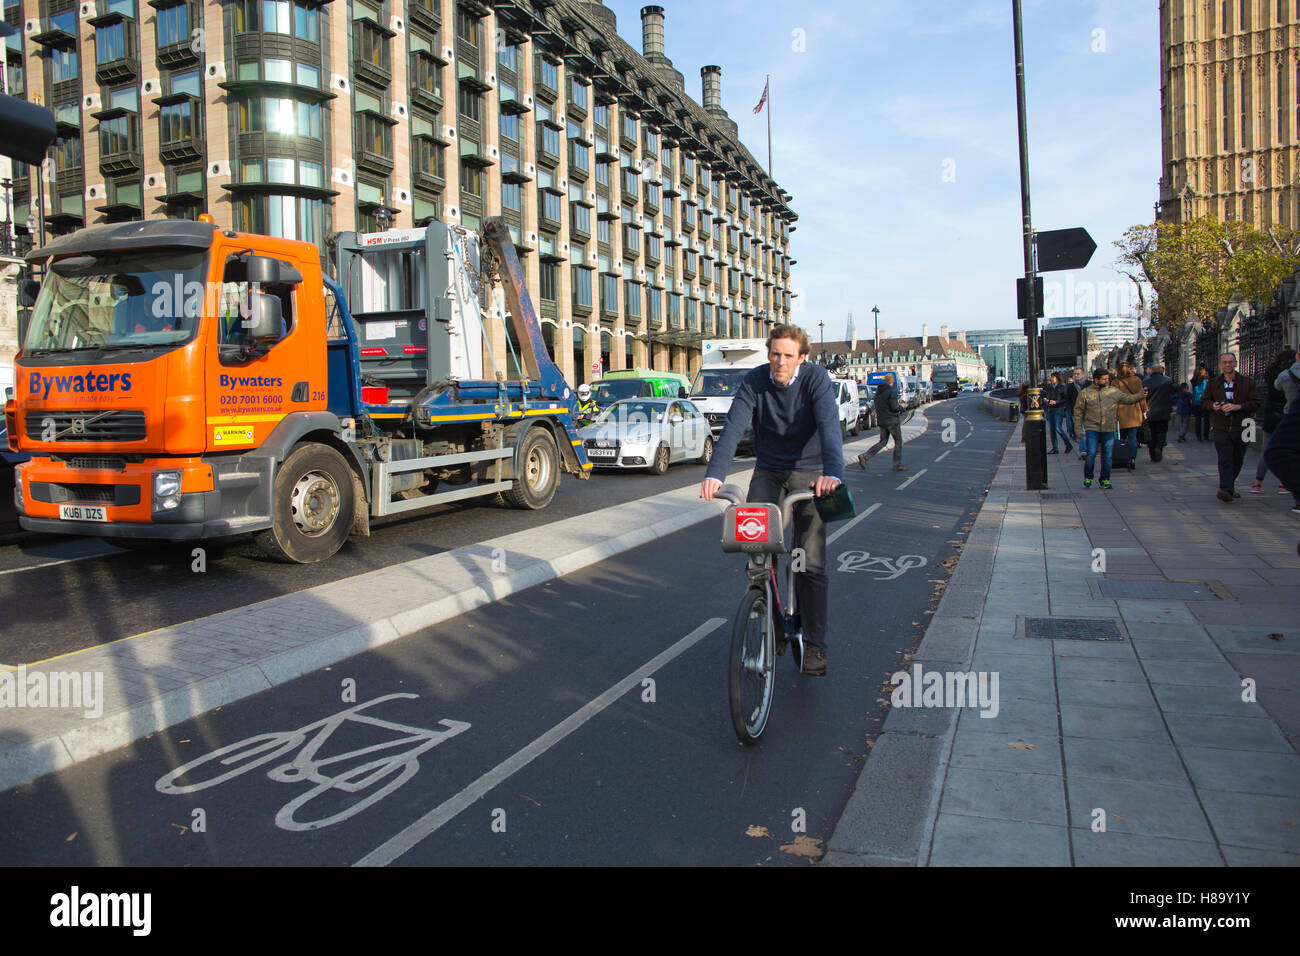 Carril bici segregado, en el ciclo rutas para cruzar el puente de Westminster, que forma parte de las principales mejoras de seguridad para los ciclistas de Londres Foto de stock